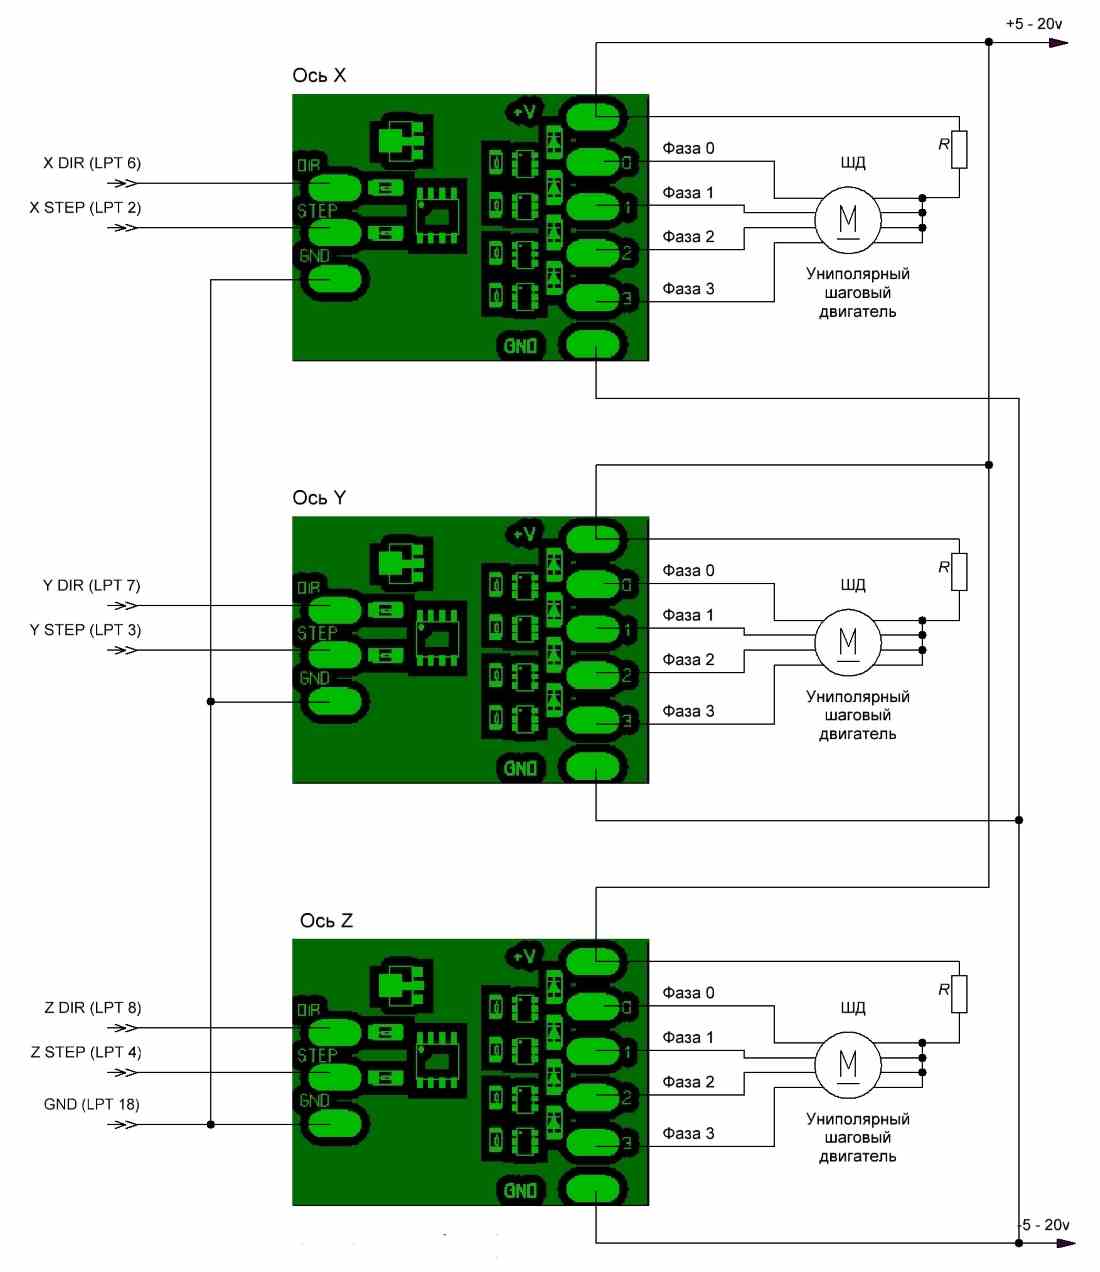 Схема подключения униполярных шаговых электродвигателей для 3-х координатного станка с ЧПУ (нажмите для увеличения)